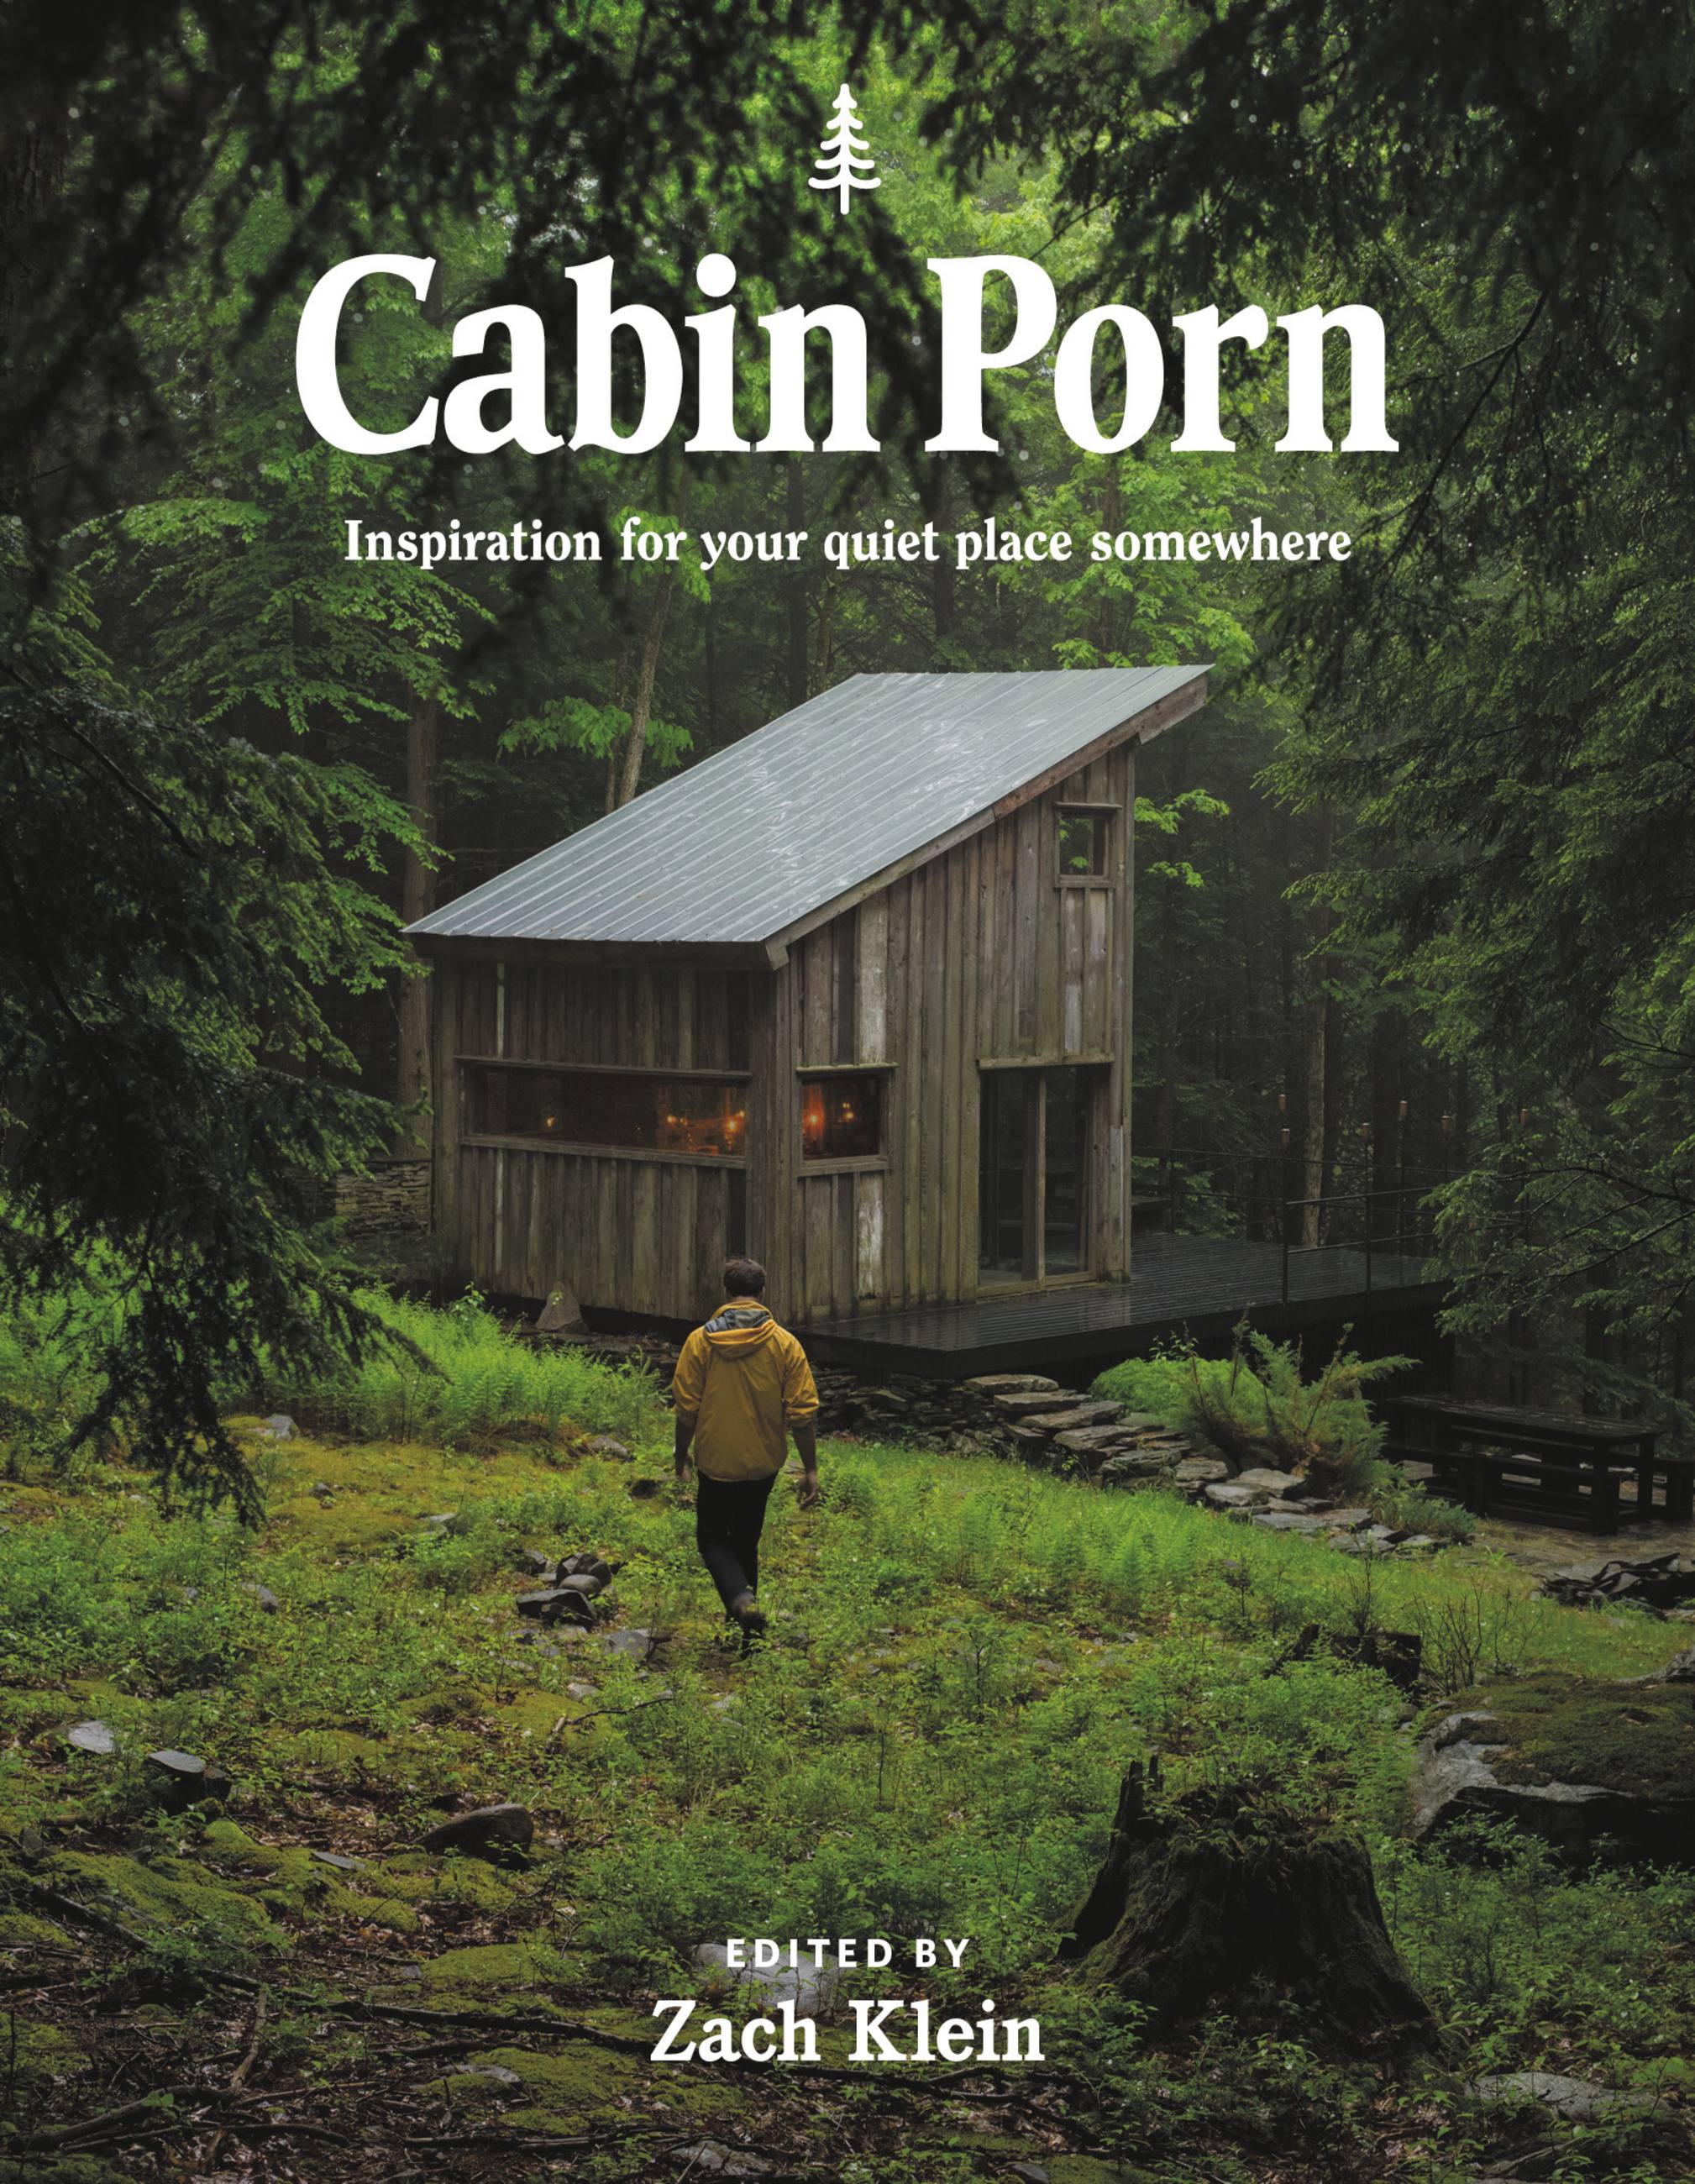 2018px x 2600px - Cabin Porn by Zach Klein | Hachette Book Group